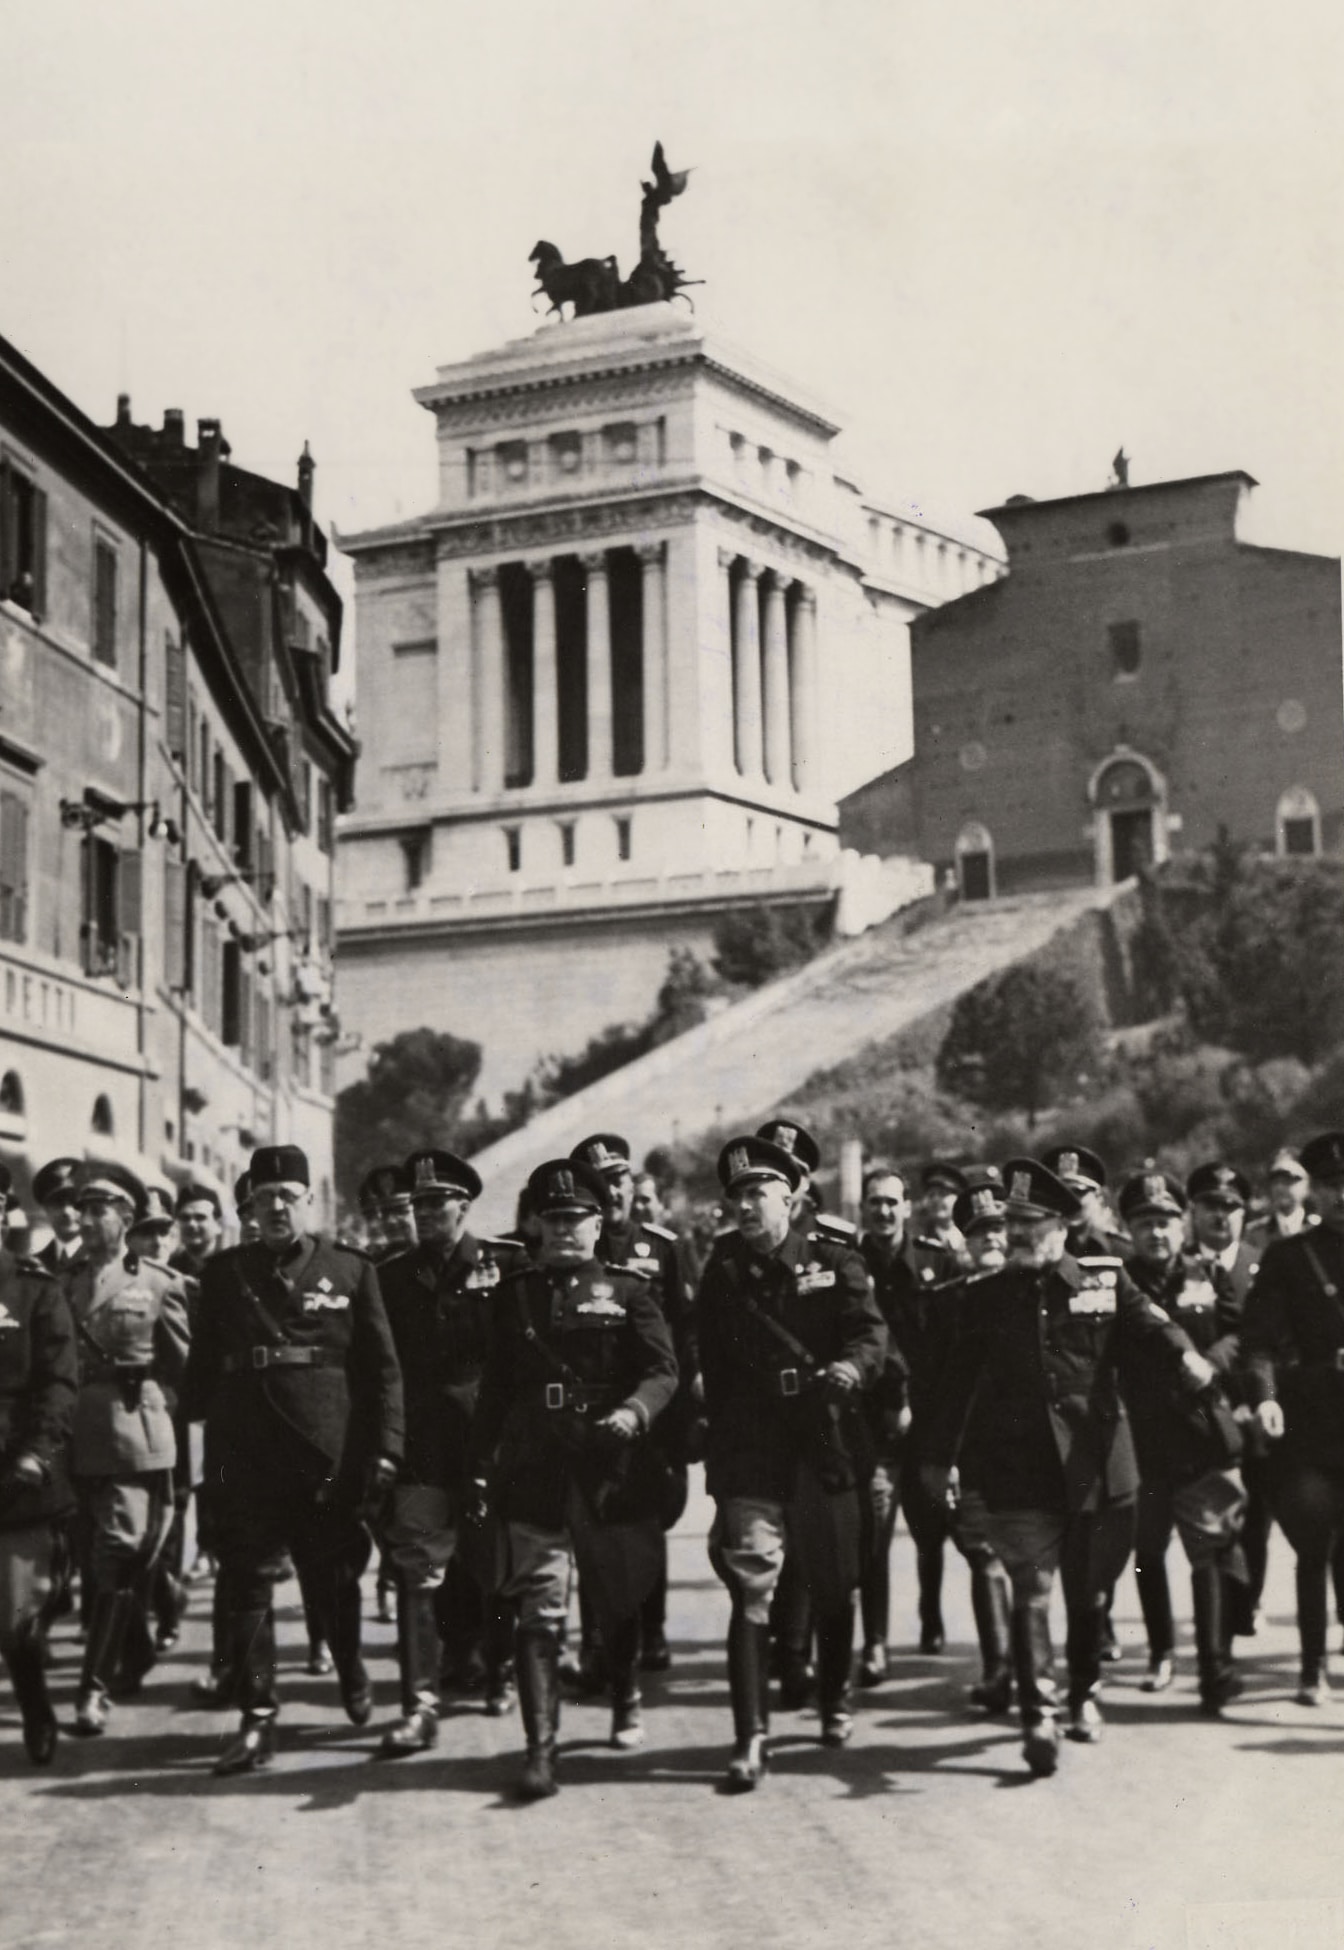 Benito Mussolini in compagnia dell’architetto Marcello Piacentini, in occasione dell’inaugurazione della via del mare nel 1940